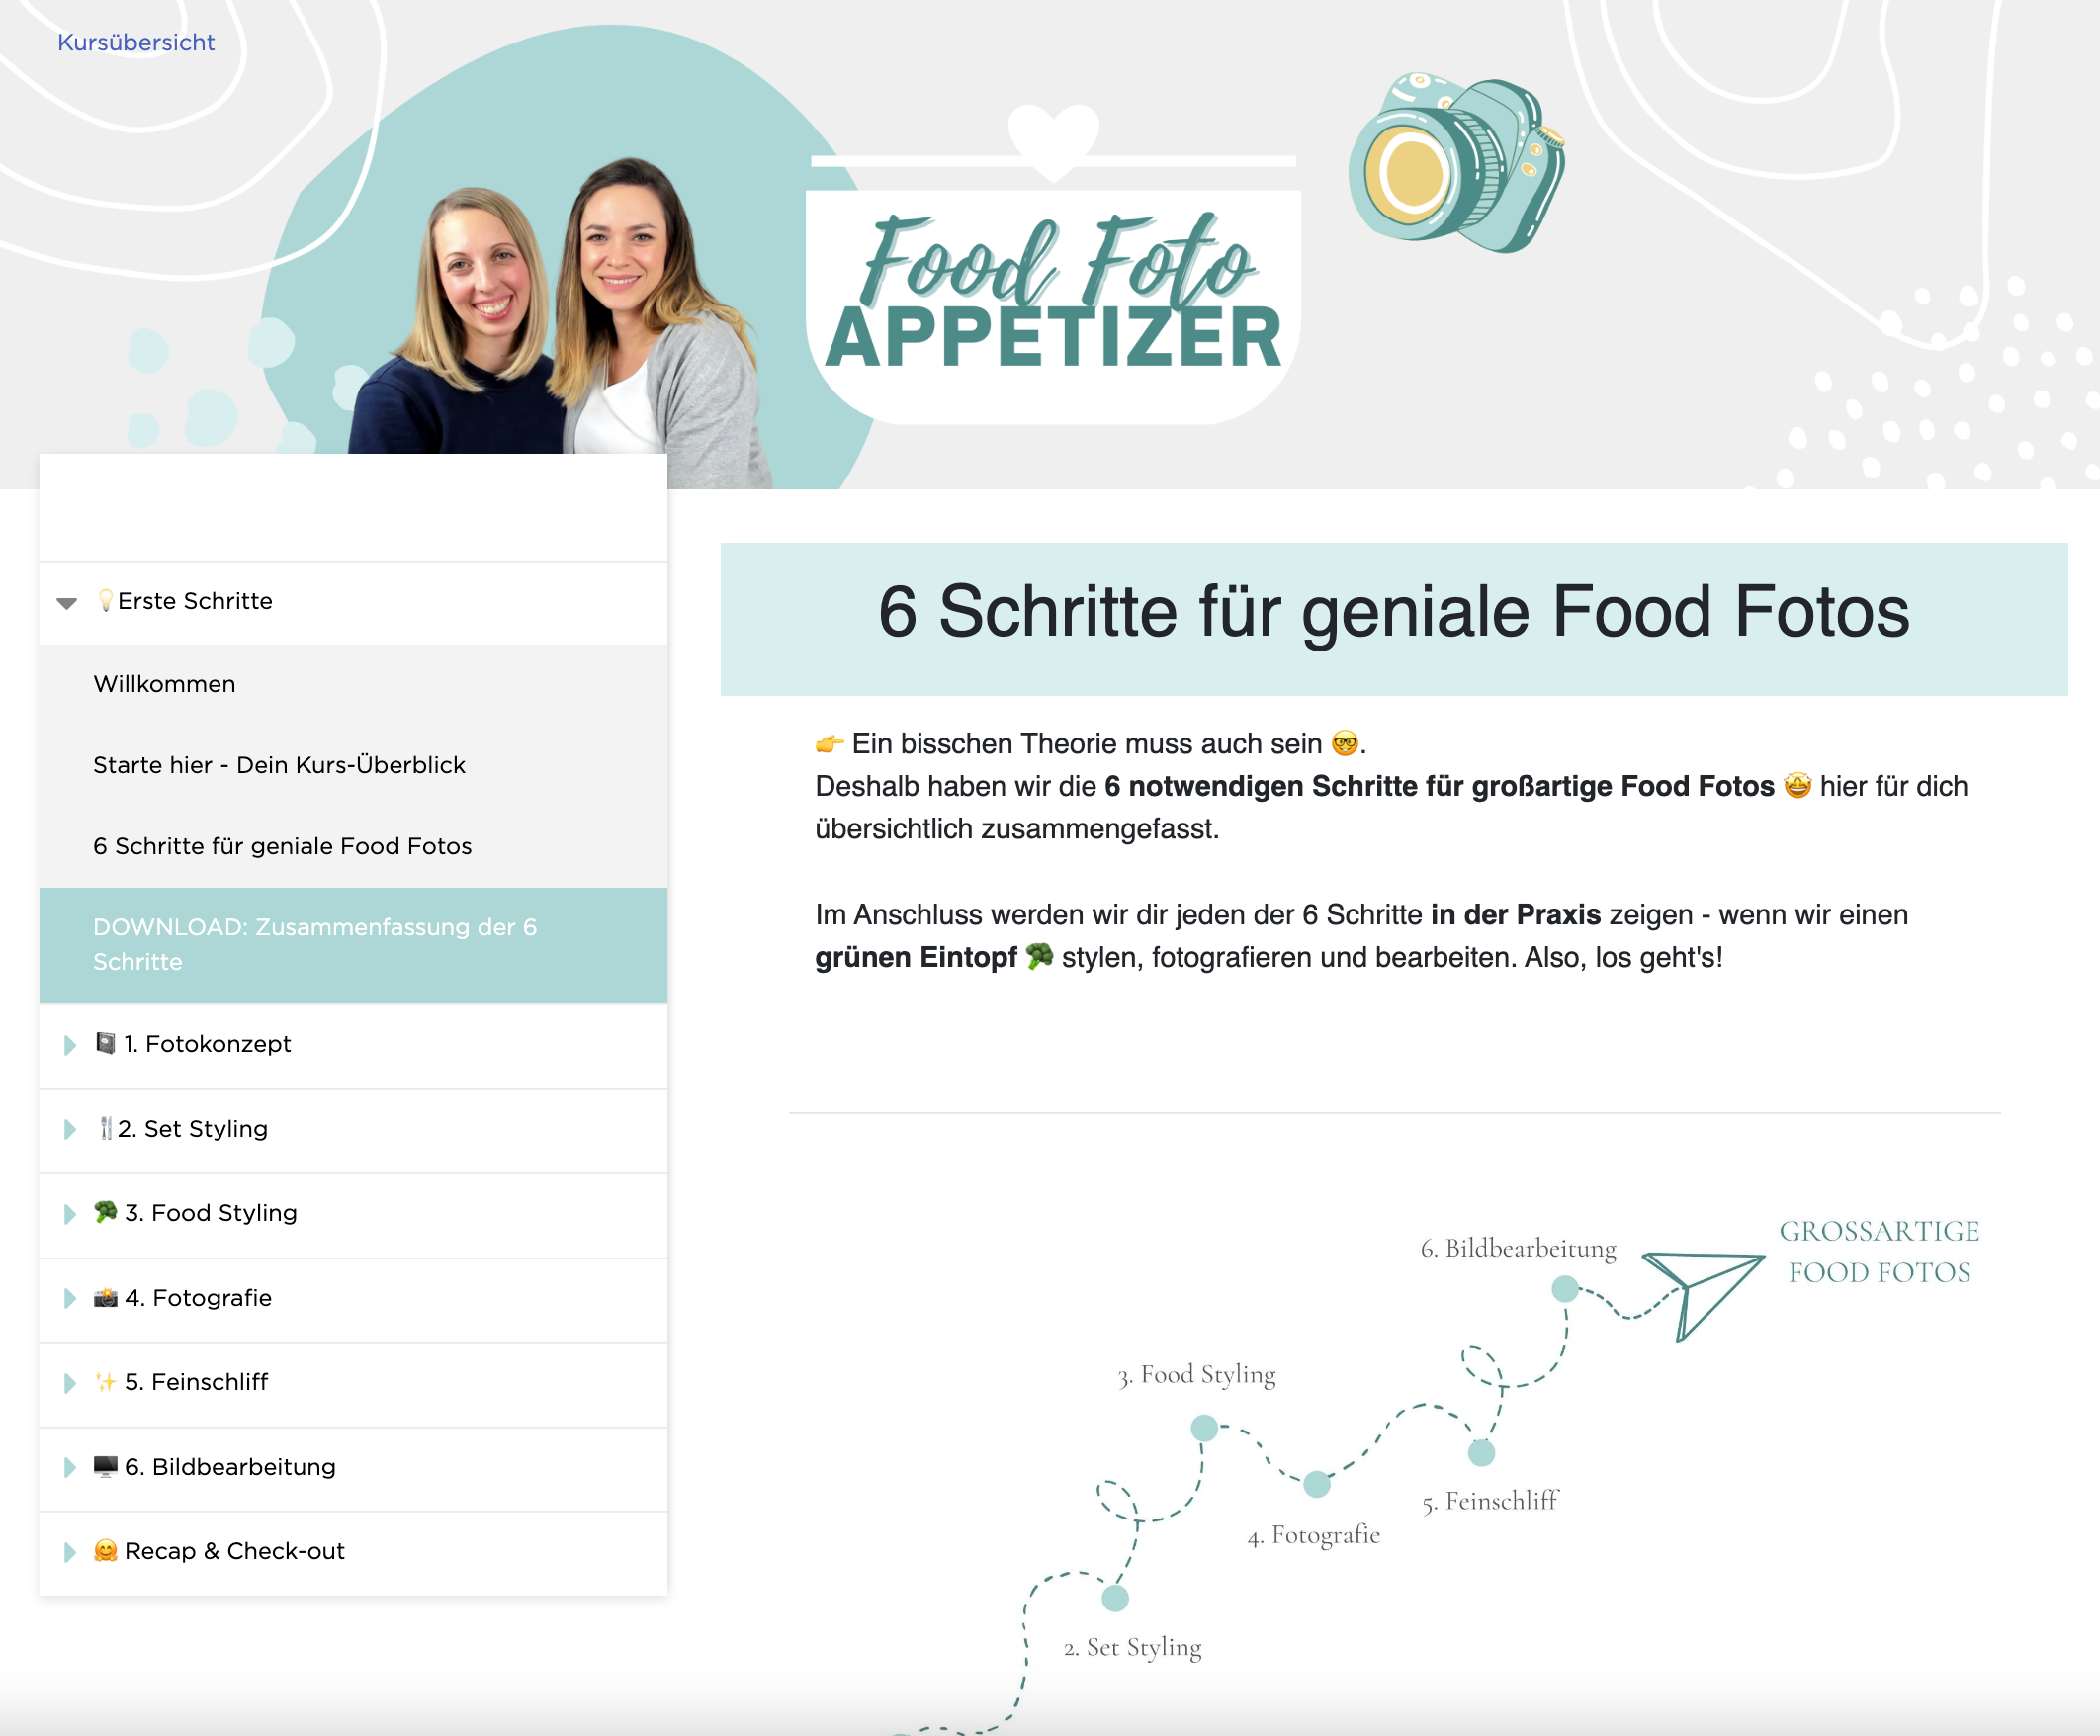 Food Foto Appetizer - Download 6 Schritte für geniale Food Fotos